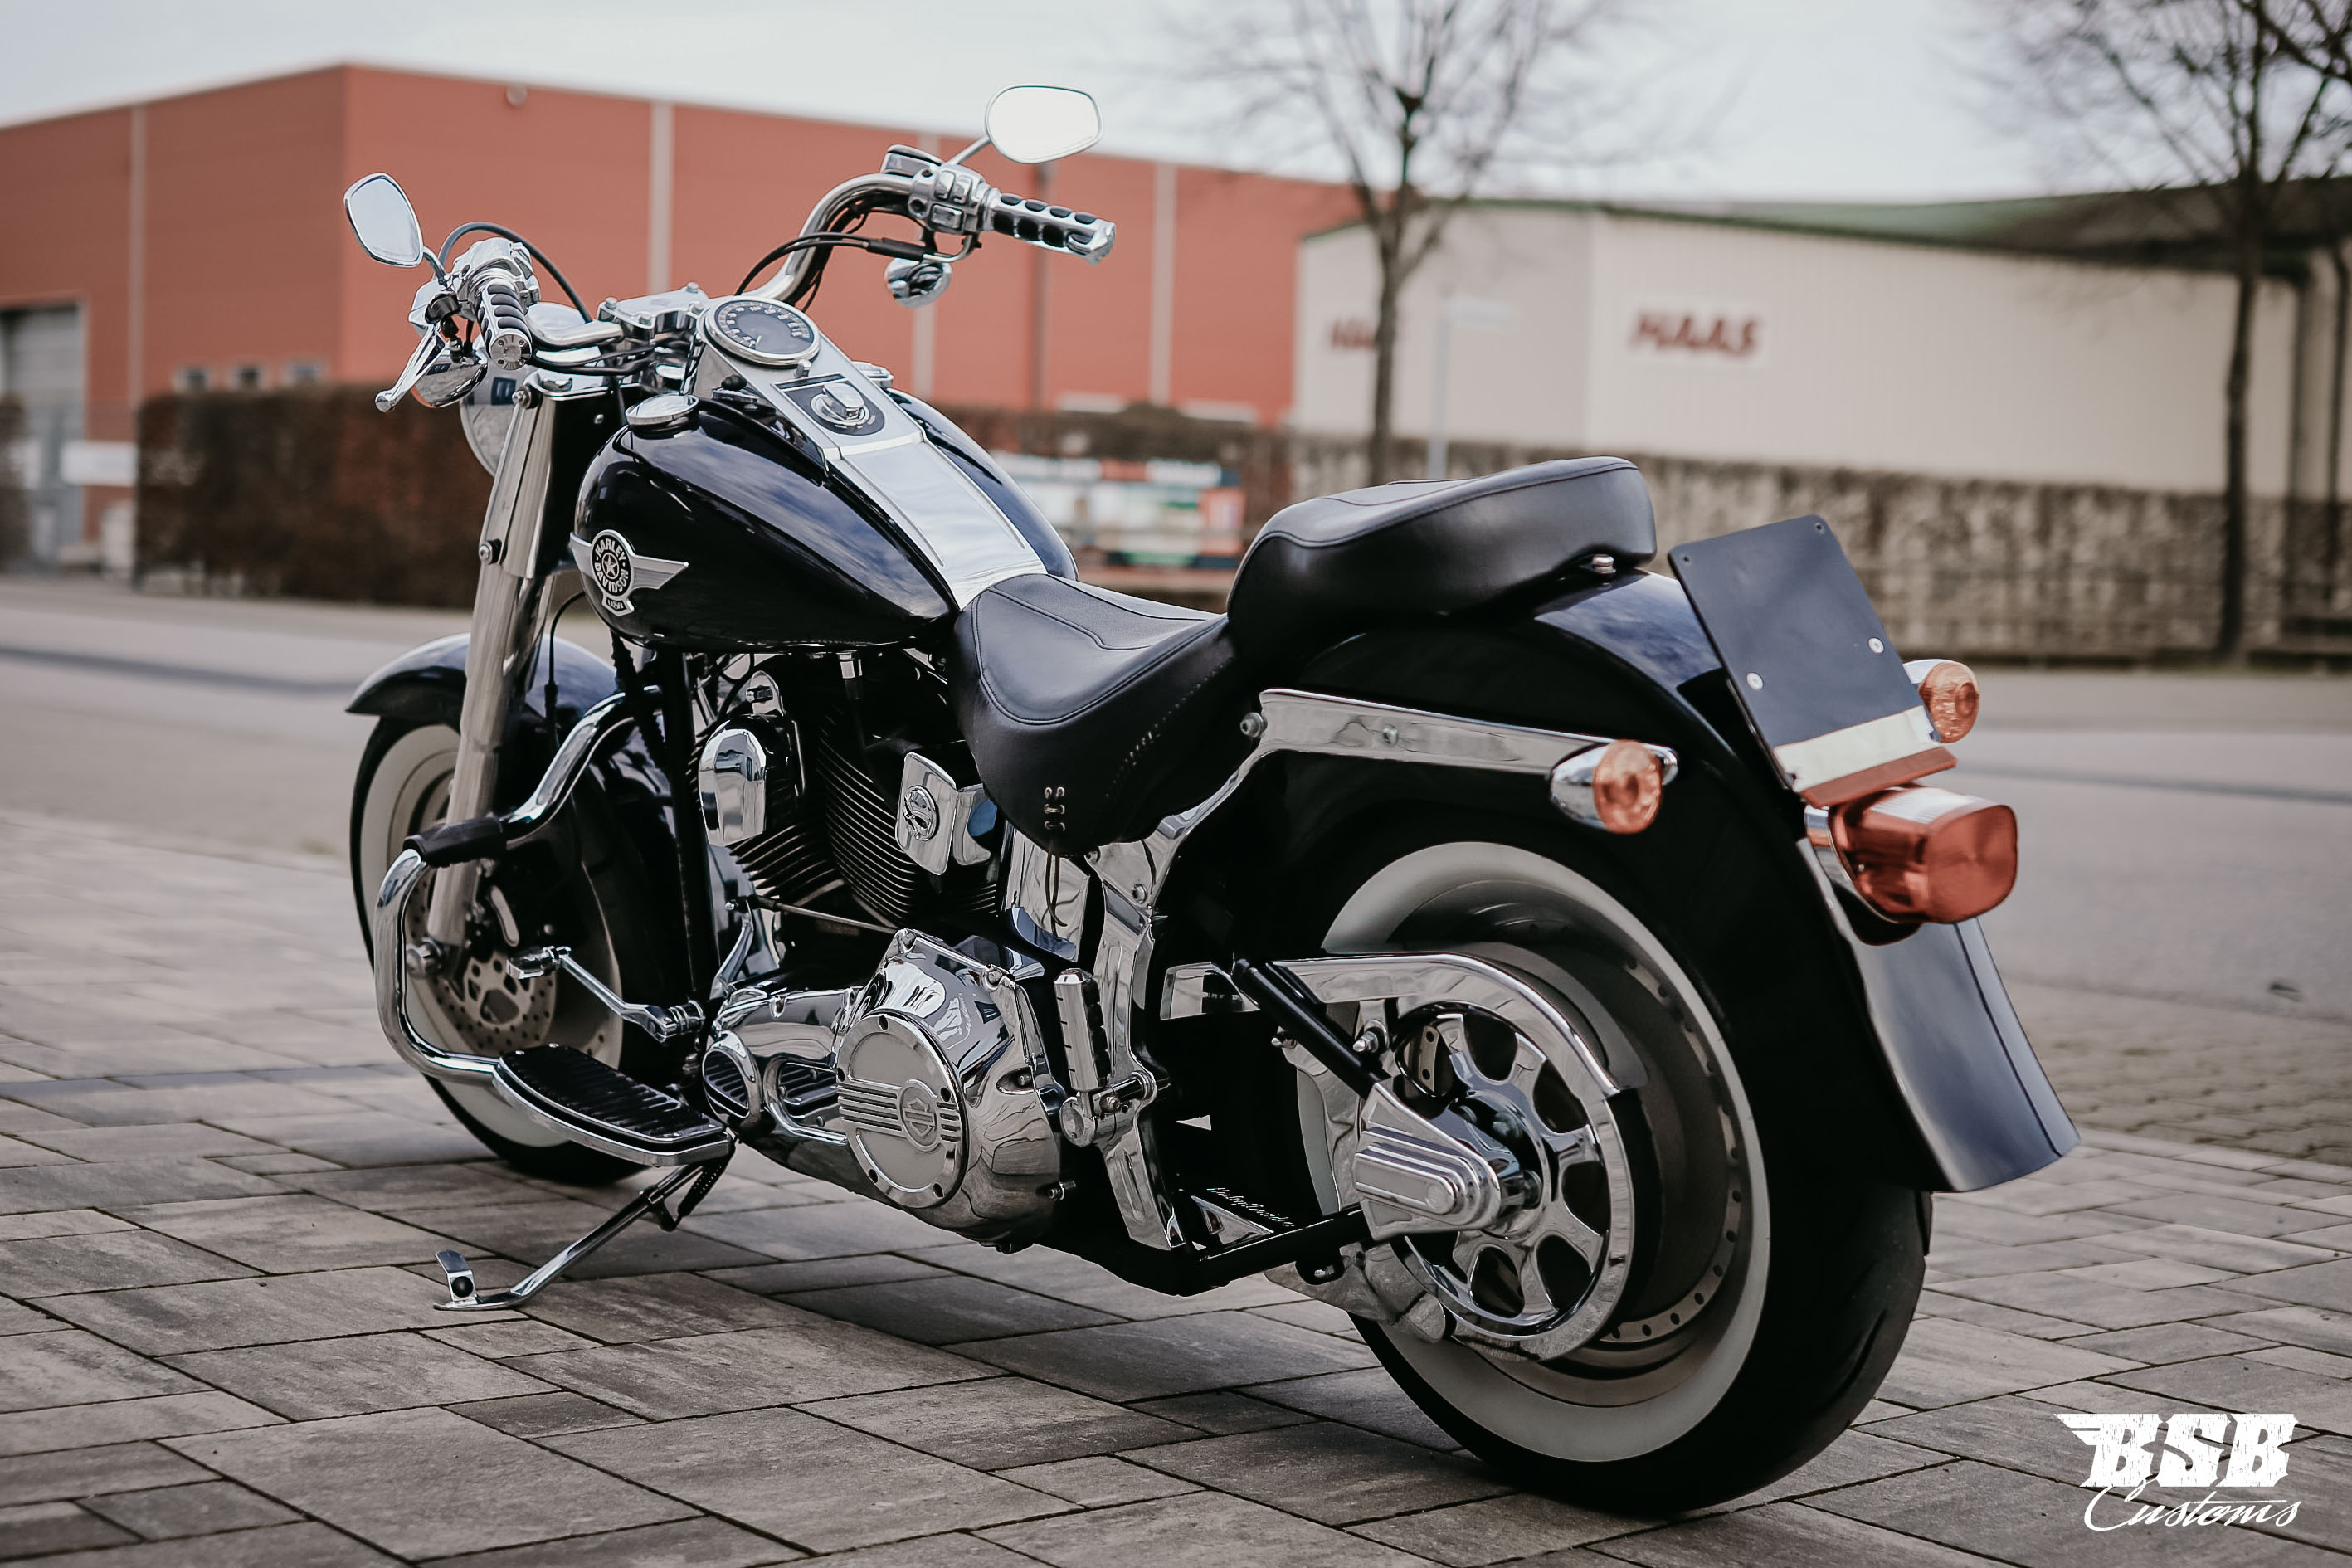 2002 Harley Davidson FAT BOY MIT VIEL CHROME // WEIßWAND REIFEN TOP ZUSTAND ab 179 EUR finanzieren* 